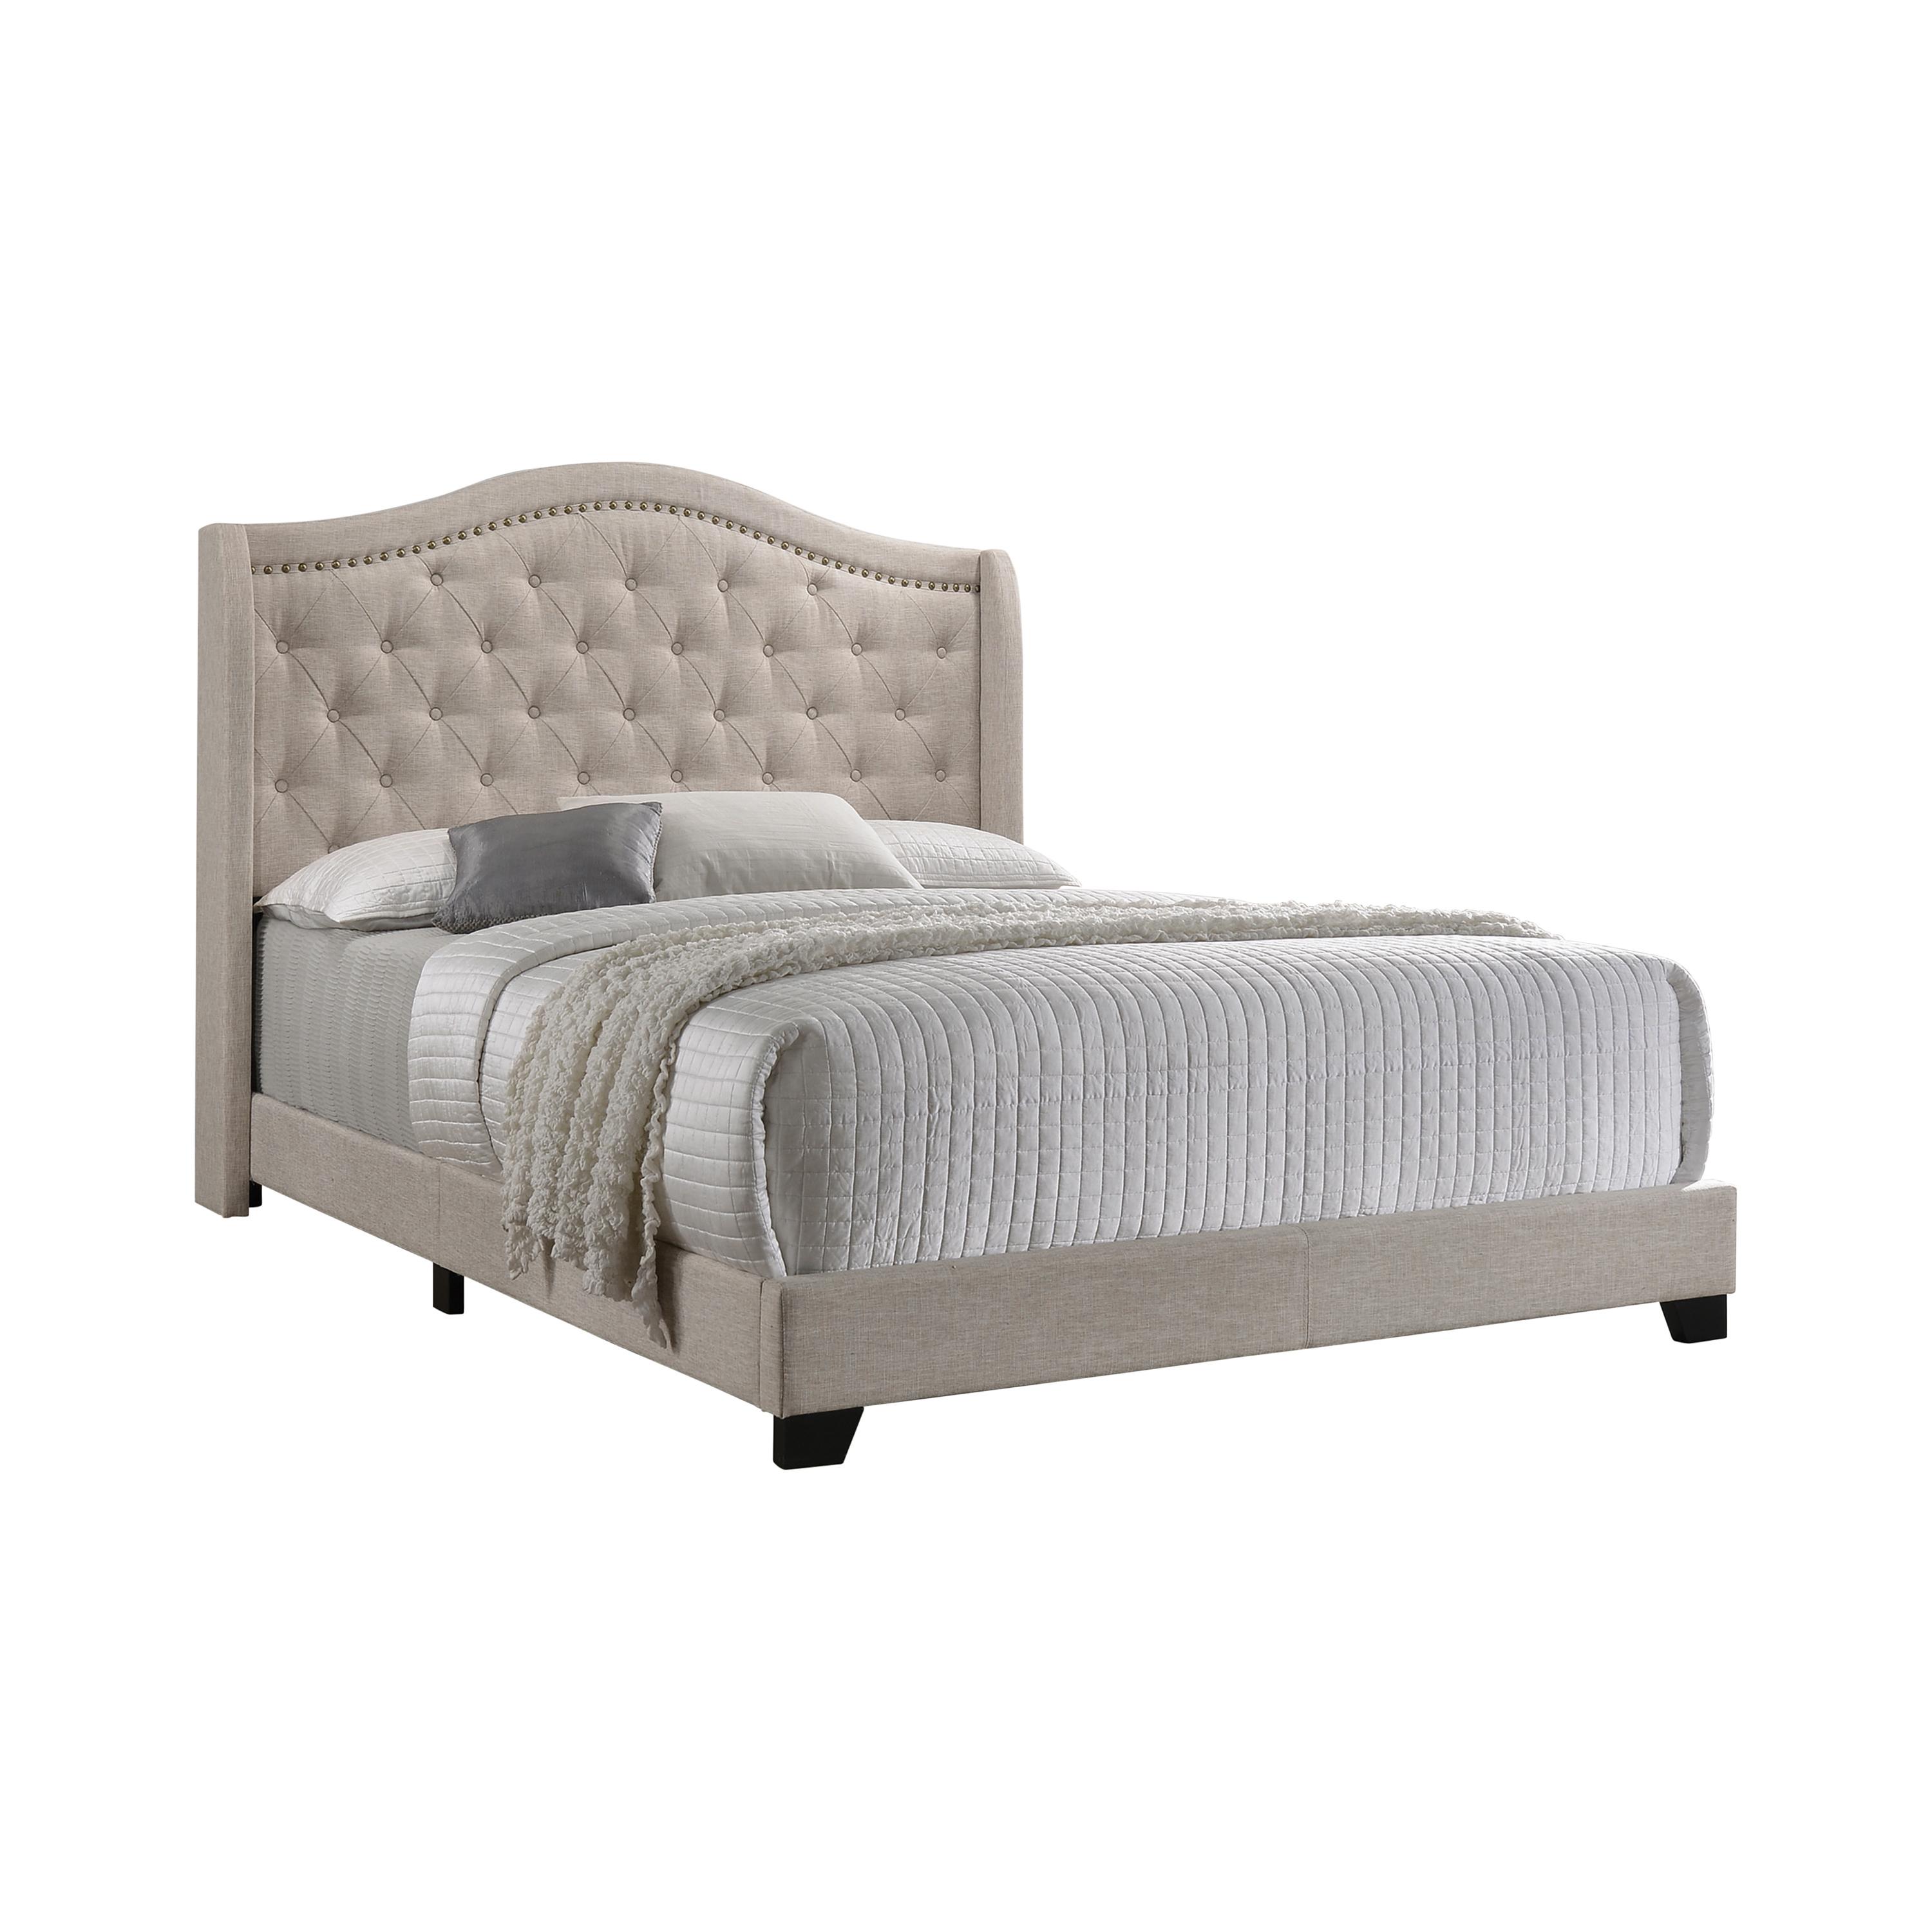 Contemporary Bed 310073Q Sonoma 310073Q in Beige Fabric